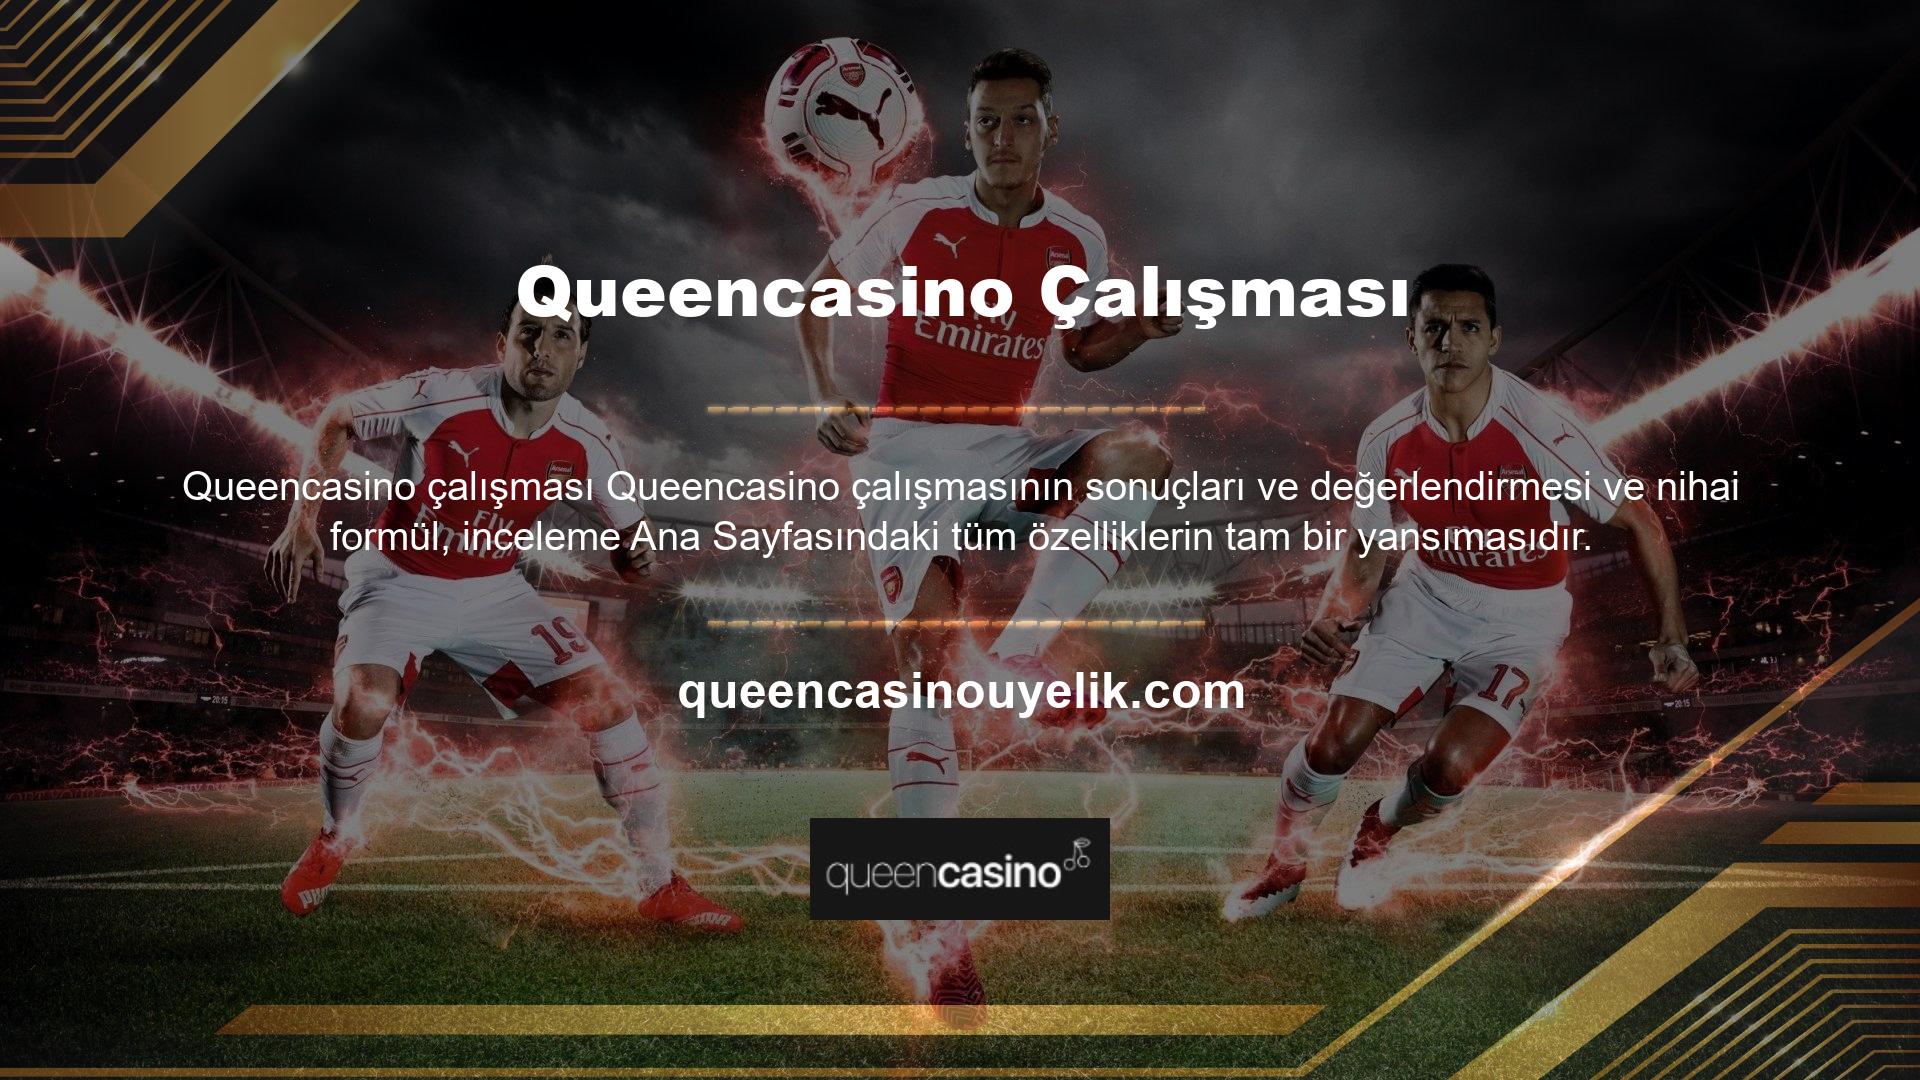 Queencasino inceleme ana sayfası web sitesi, çevrimiçi bir casinoyla sınırlı değildir, kullanıcı arayüzü basit ve eğlencelidir